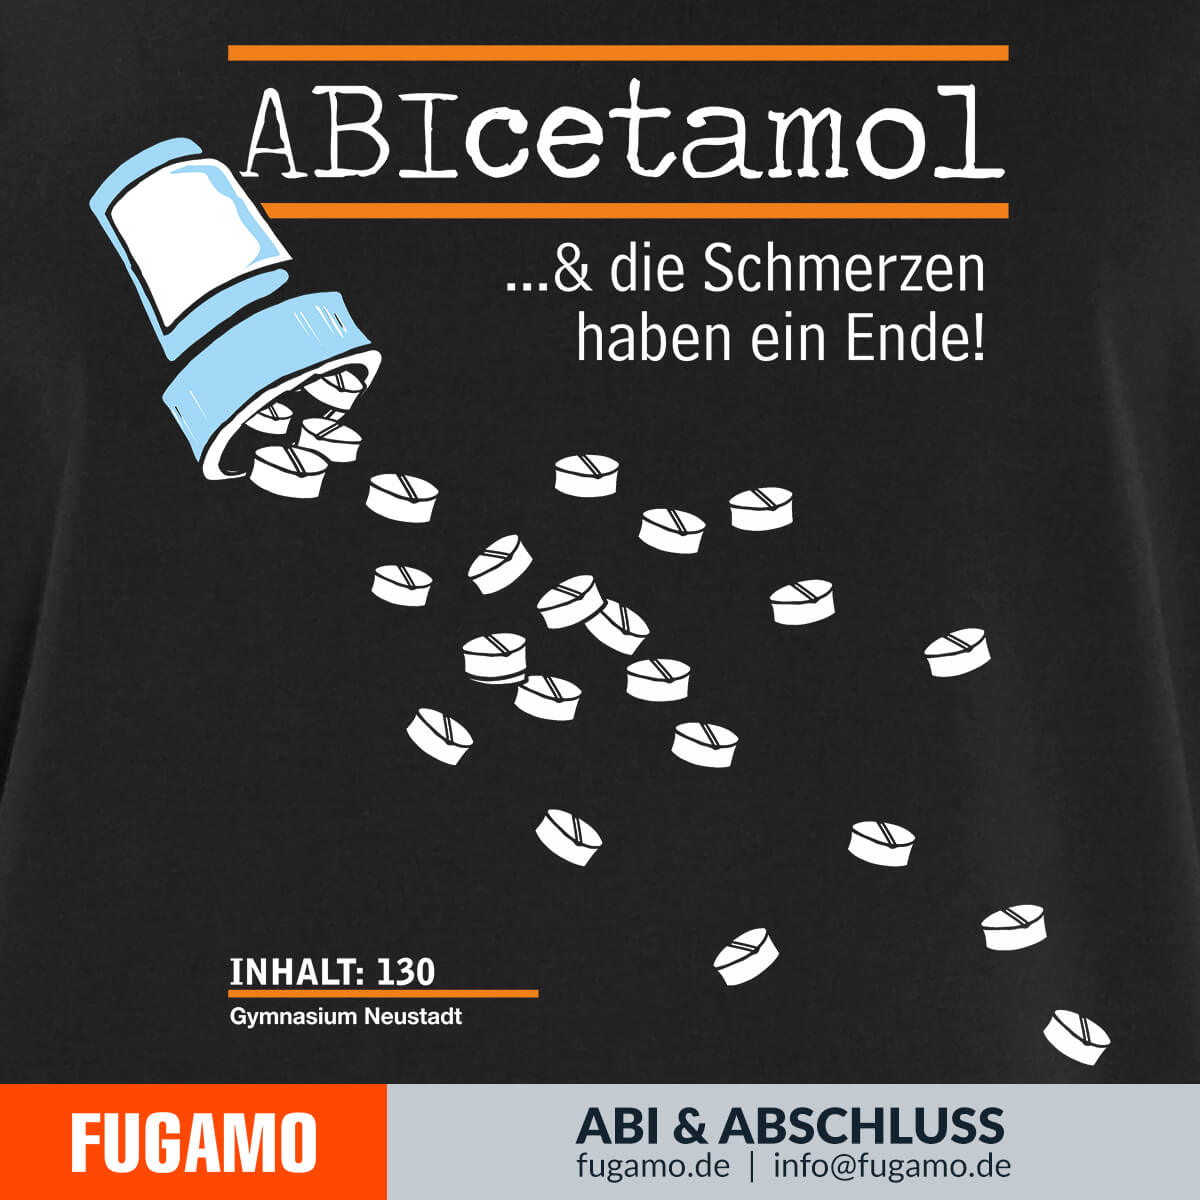 ABIcetamol - 01 - ...& die Schmerzen haben ein Ende!